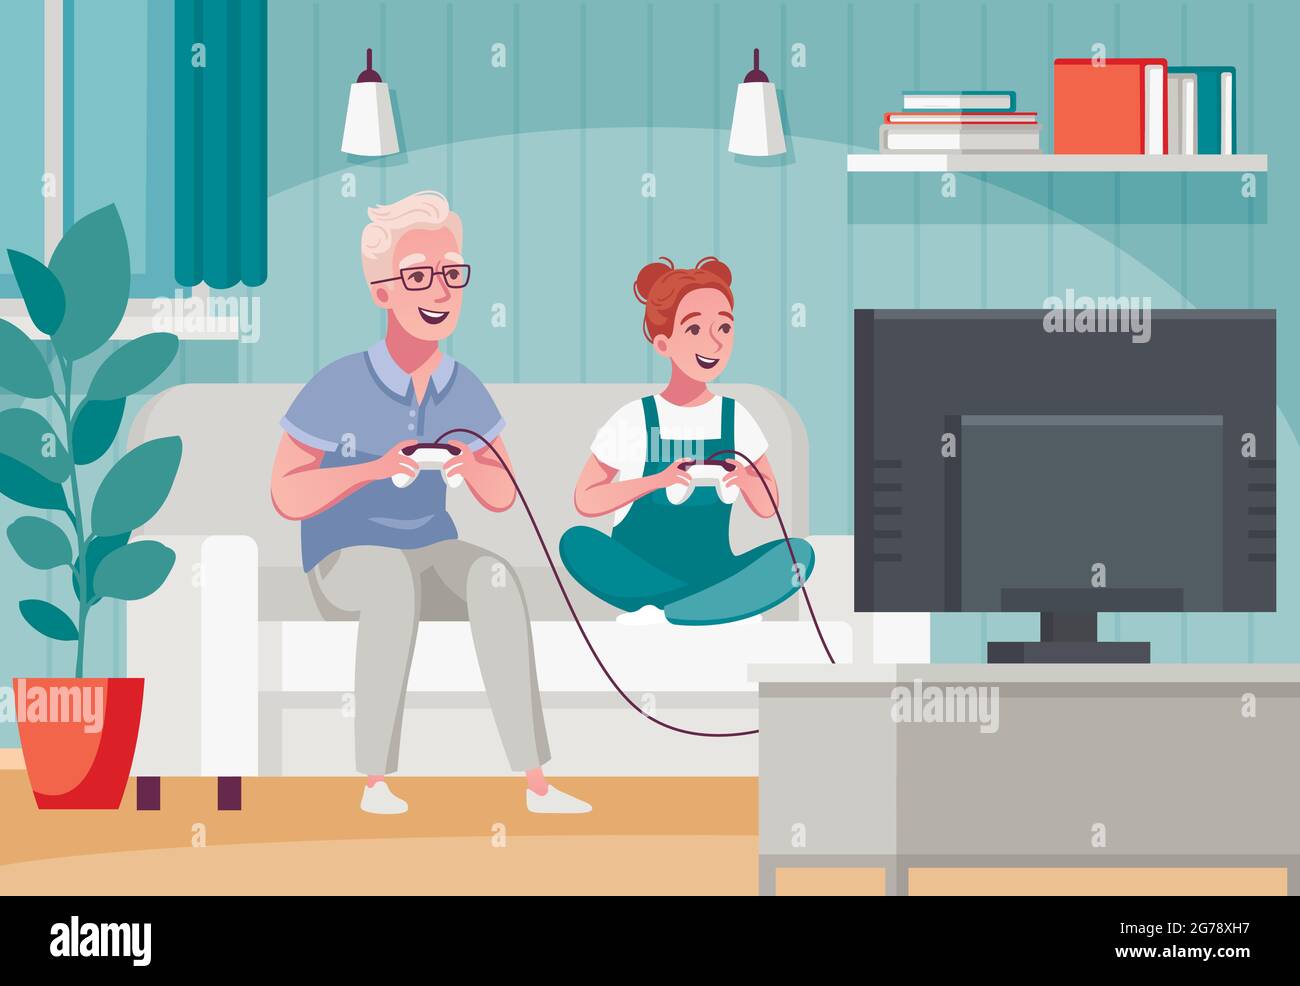 Ältere ältere Menschen Home-Aktivitäten Cartoon-Komposition mit Online-Spiele für Kinder und Großeltern Vektor-Illustration spielen Stock Vektor